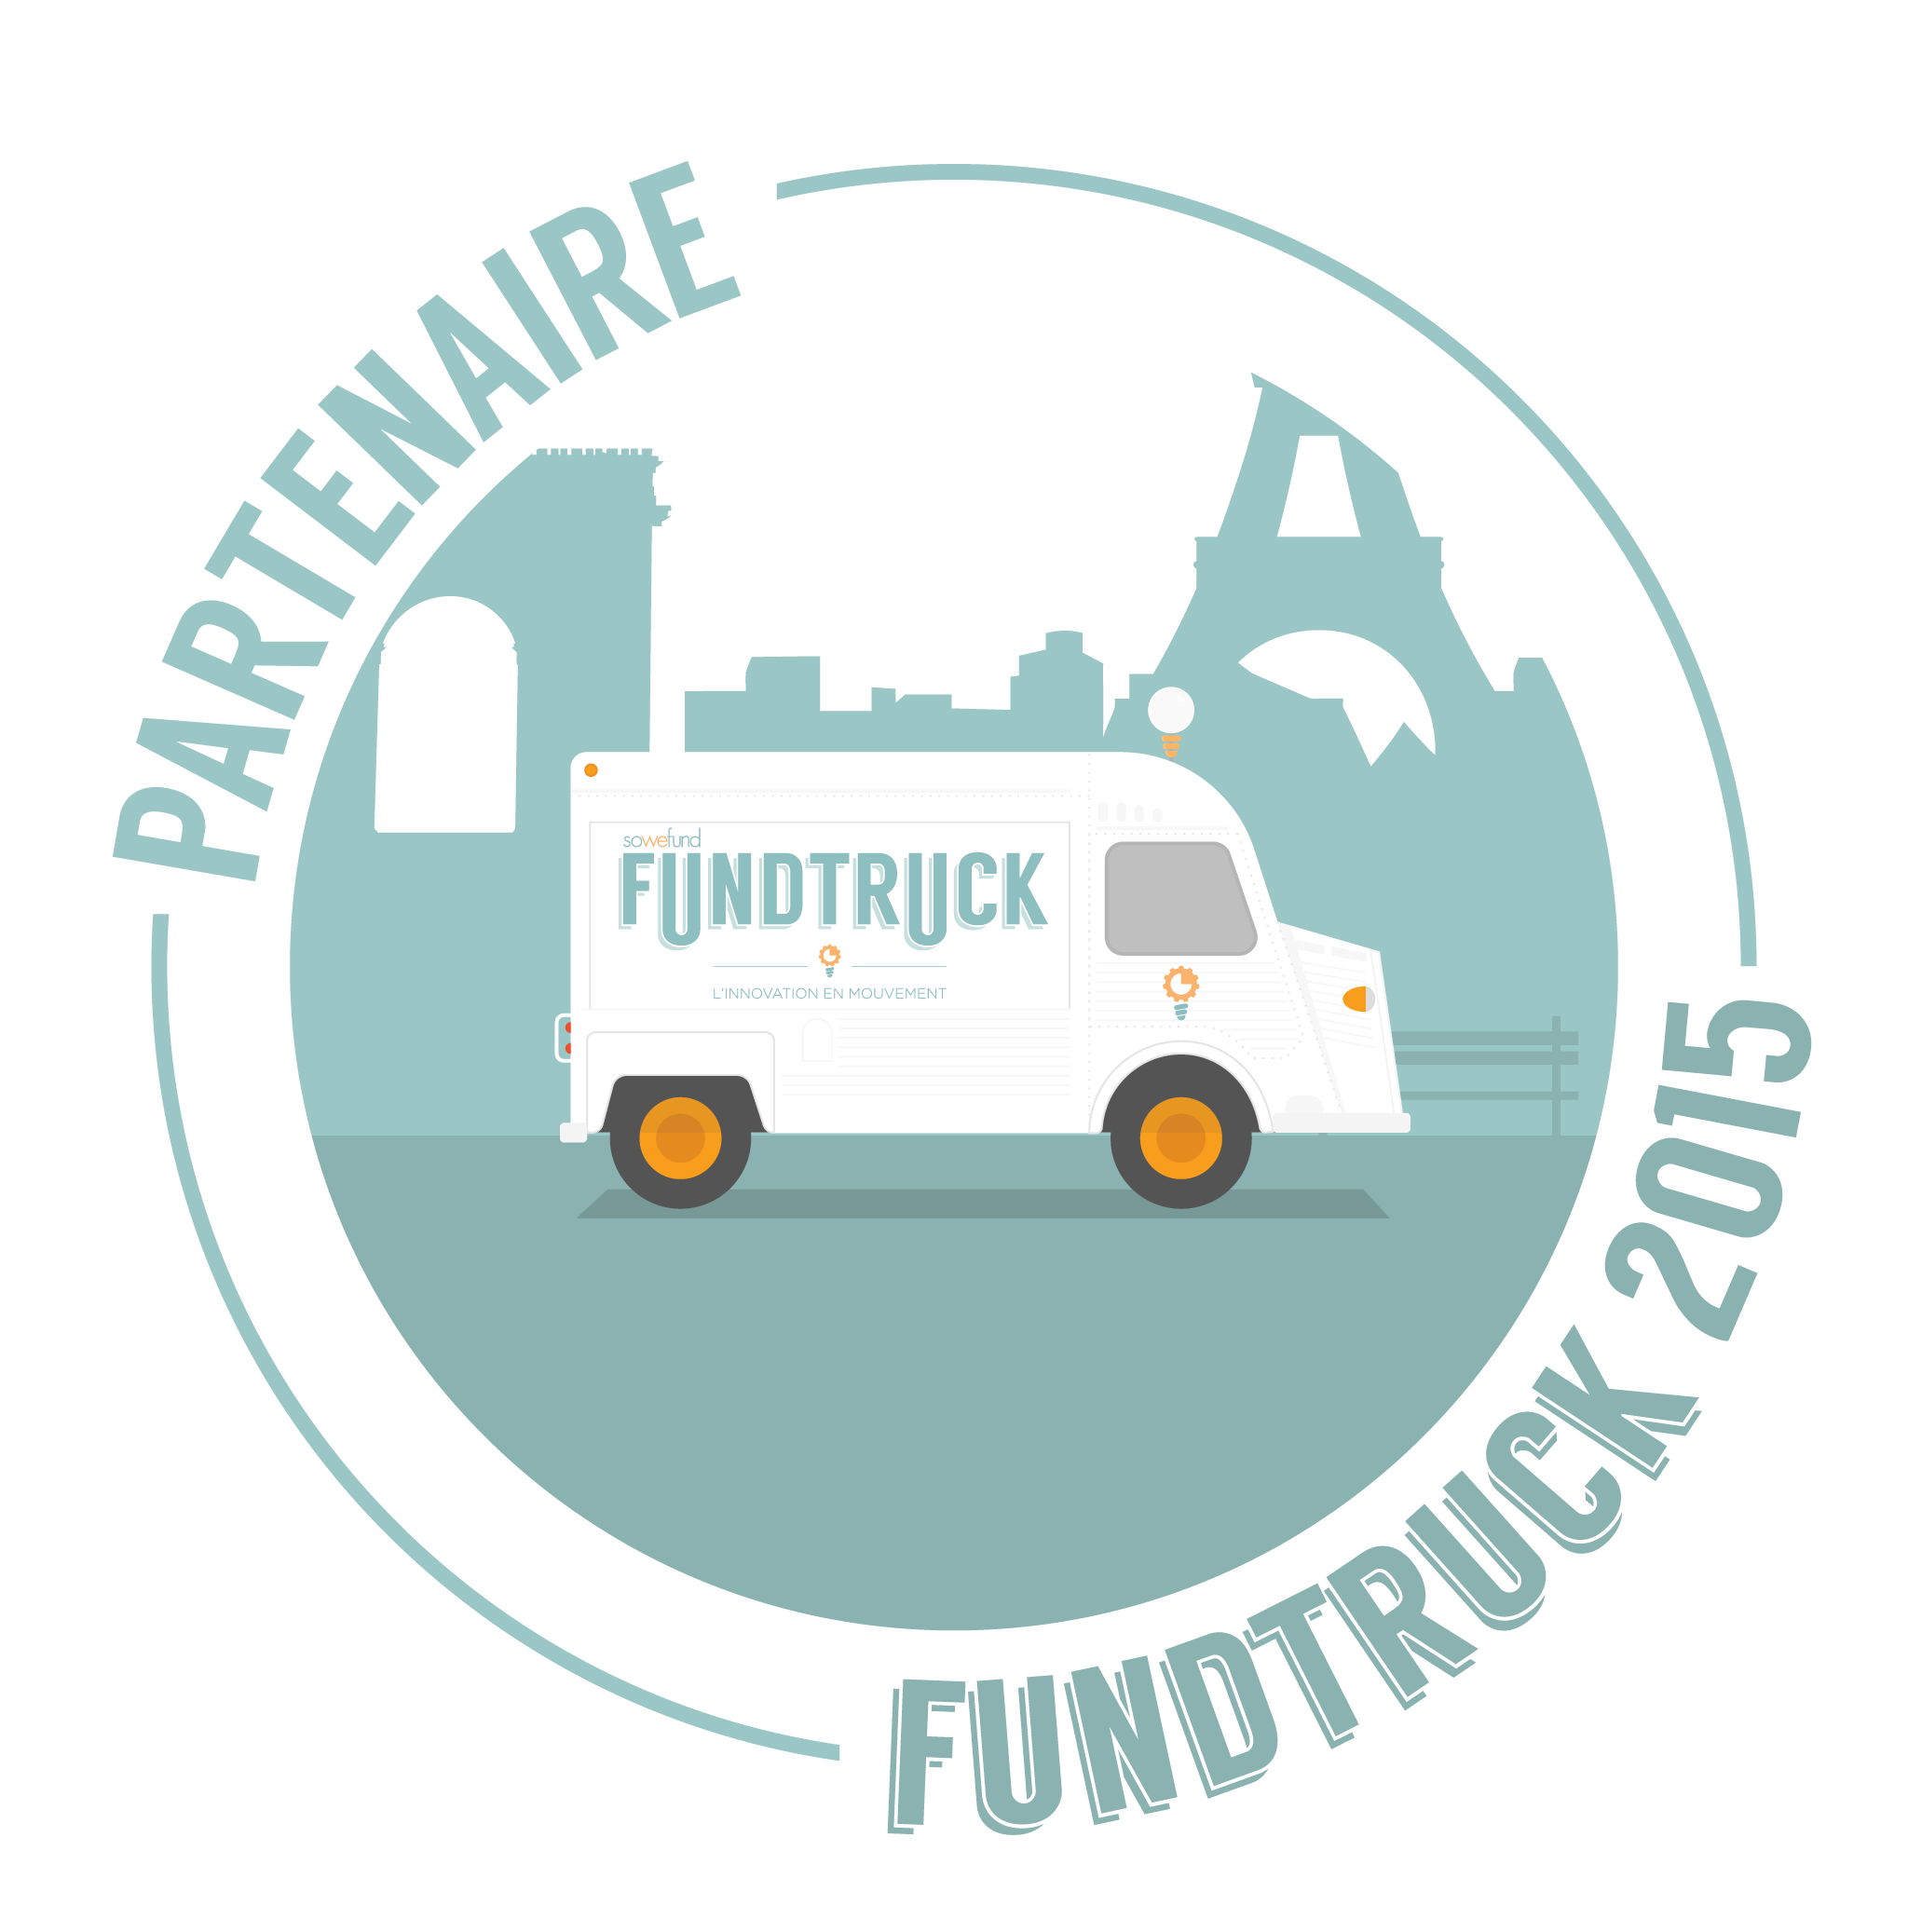 Fundtruck is seeking startups to finance!